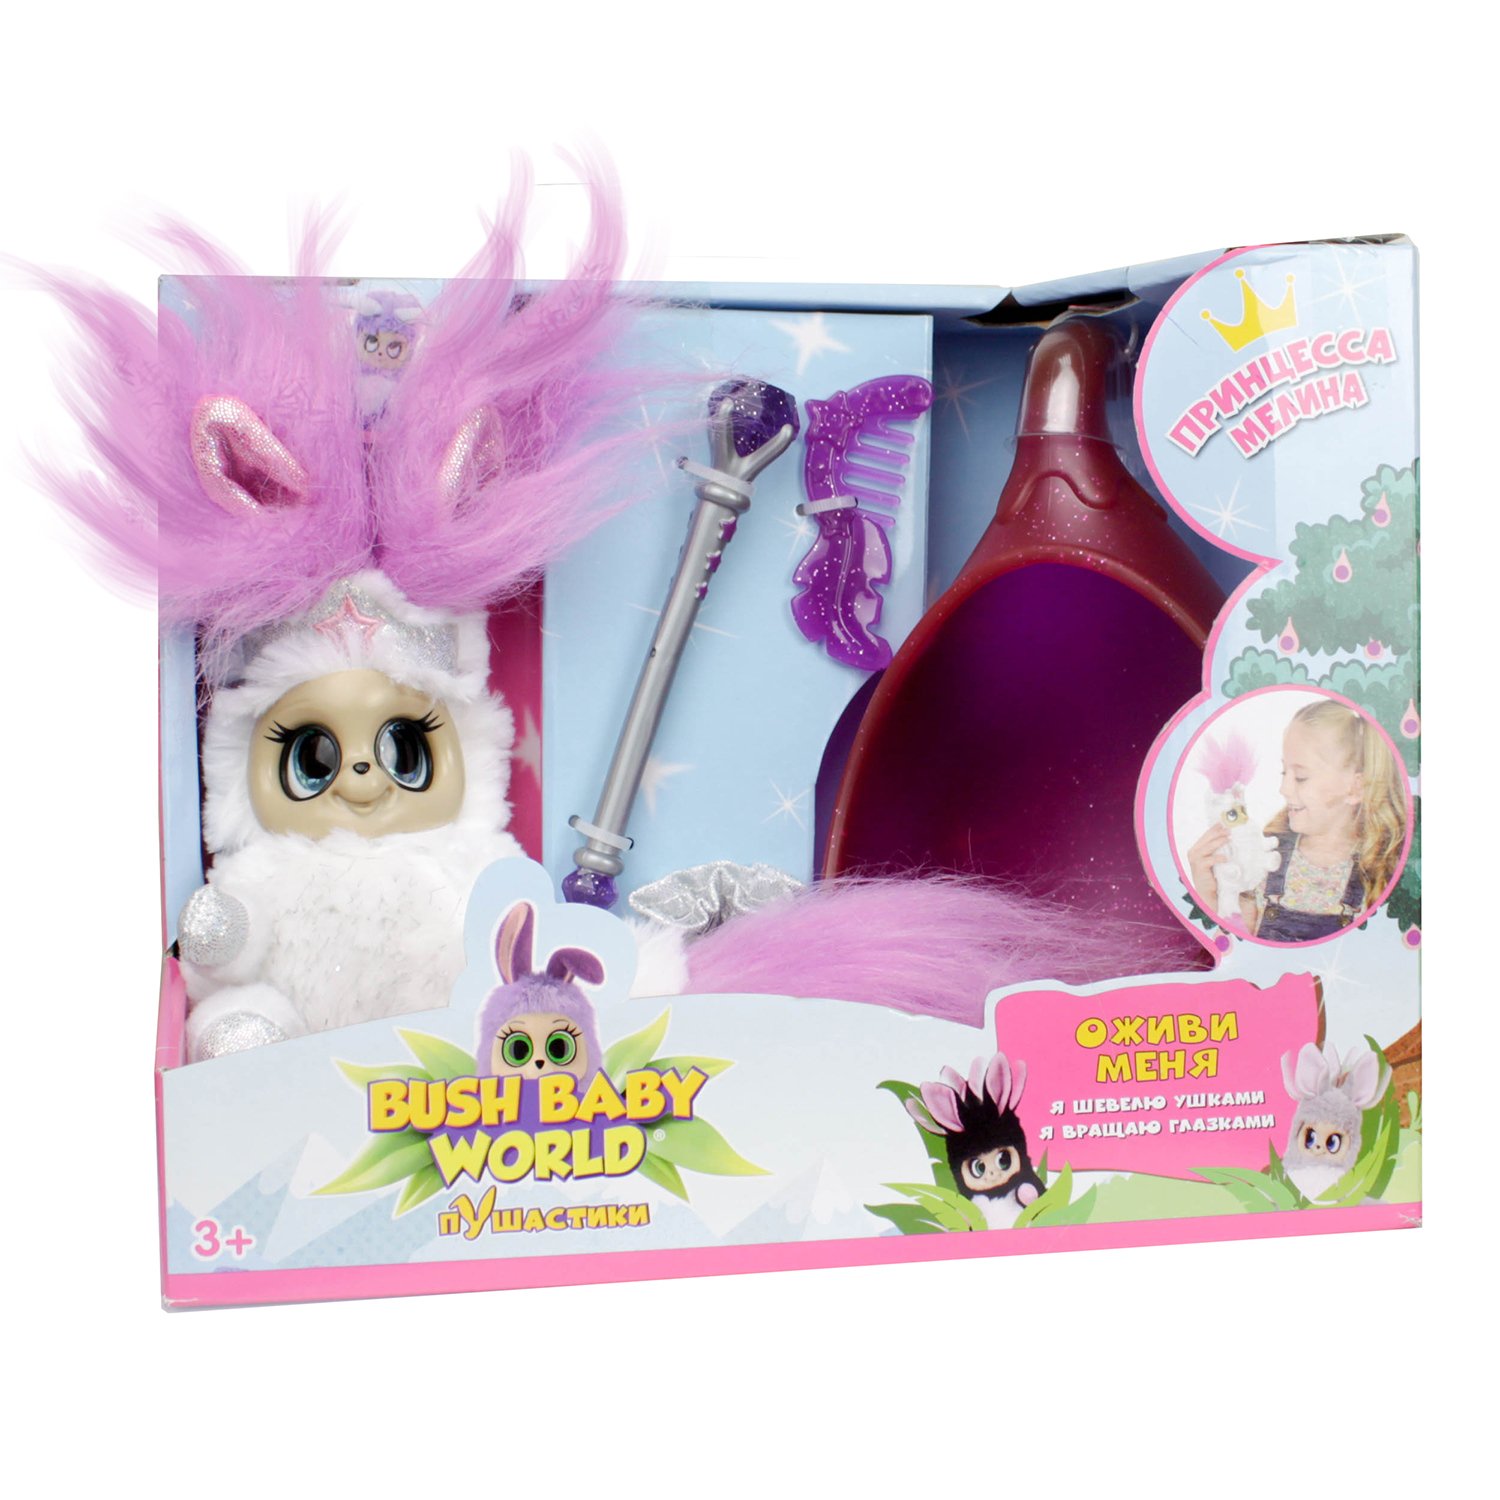 Мягкая игрушка Принцесса Мелина из серии Bush baby world, 18,5 см., со спальным коконом и аксессуарами  